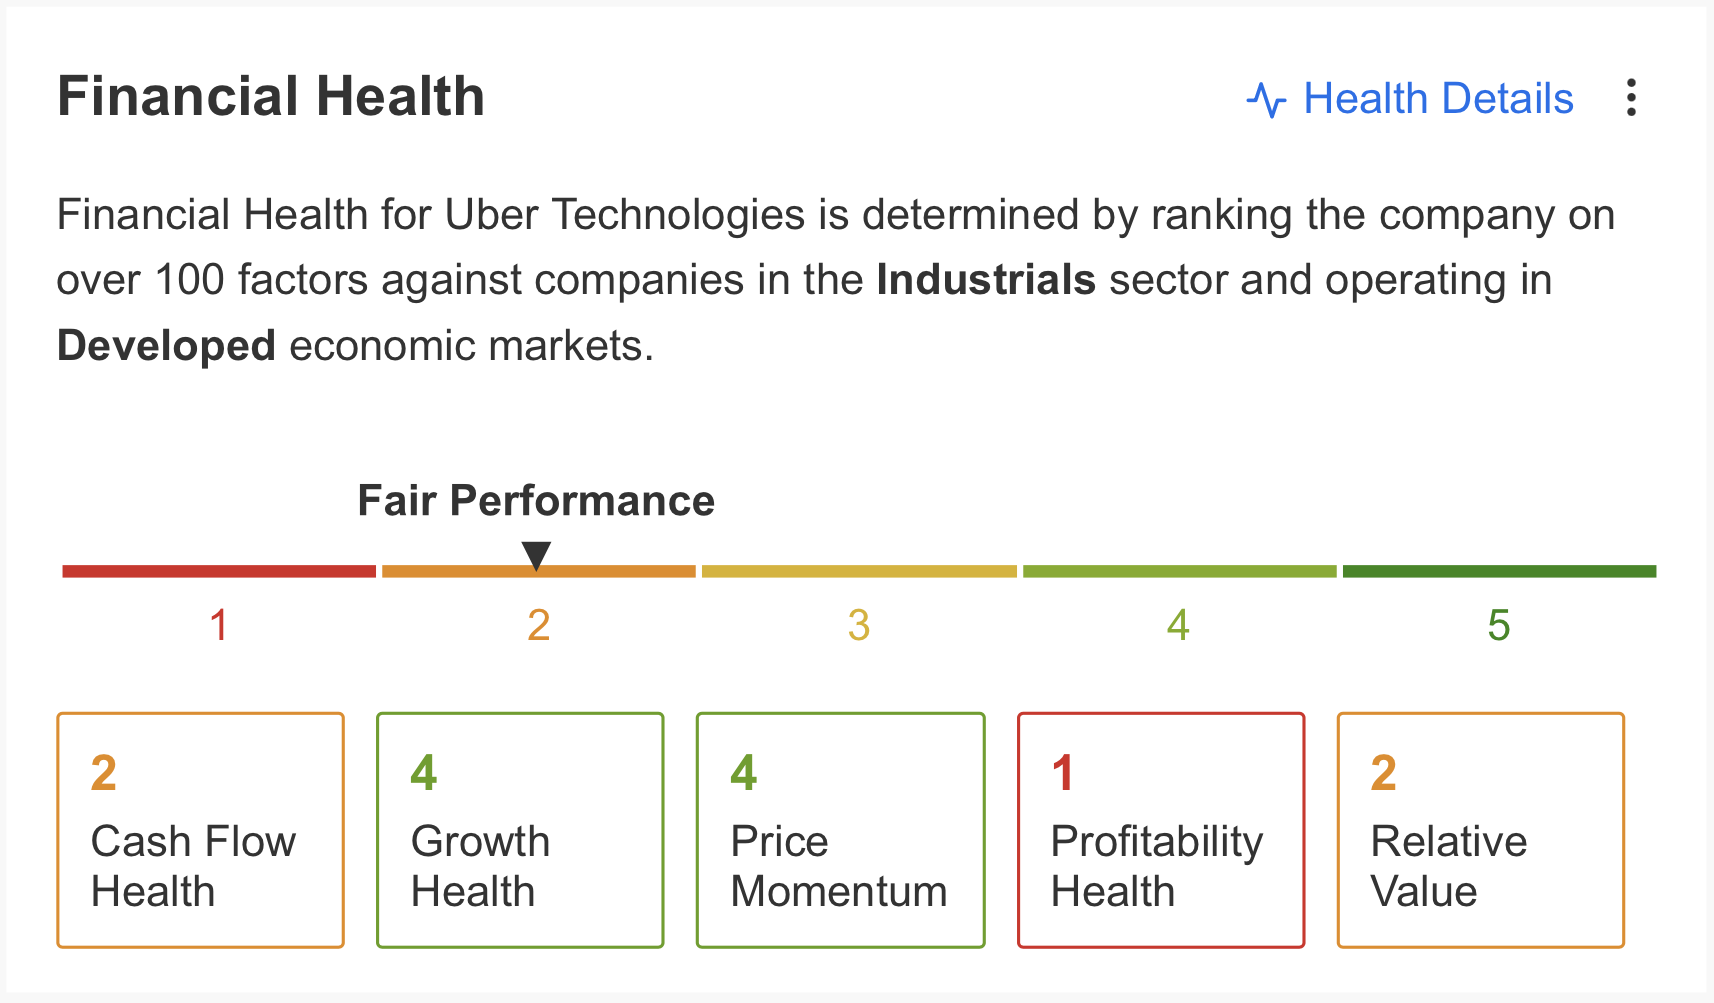 Uber Salud Financiera